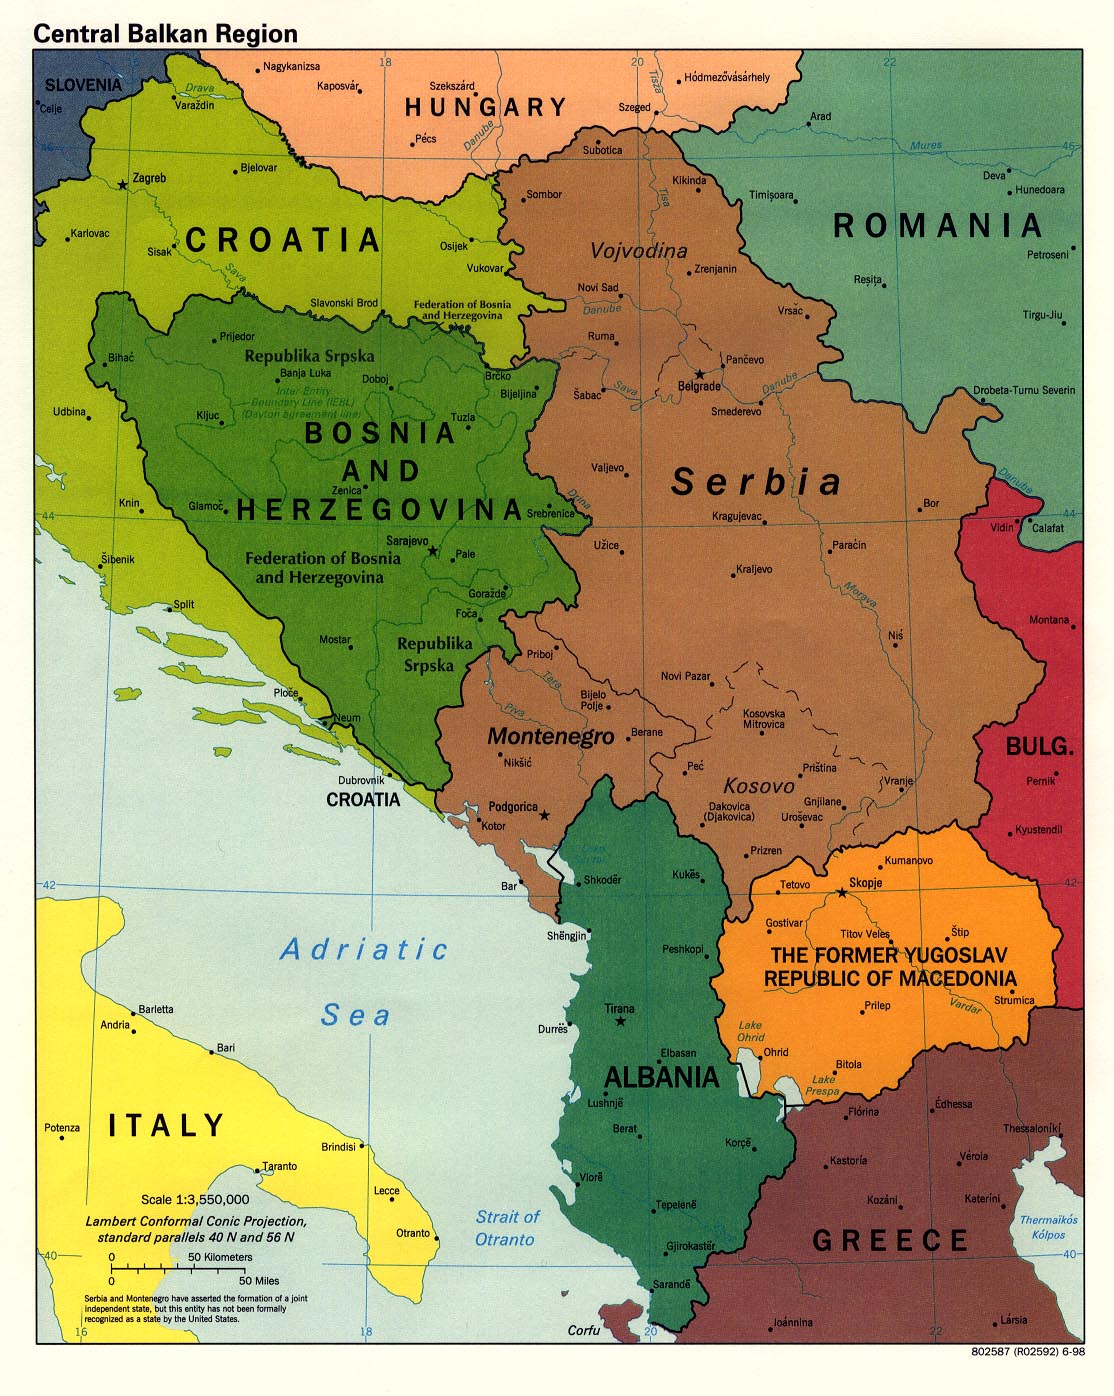 Mapa-Poltico-de-los-Balcanes-Occidental-1998.jpg